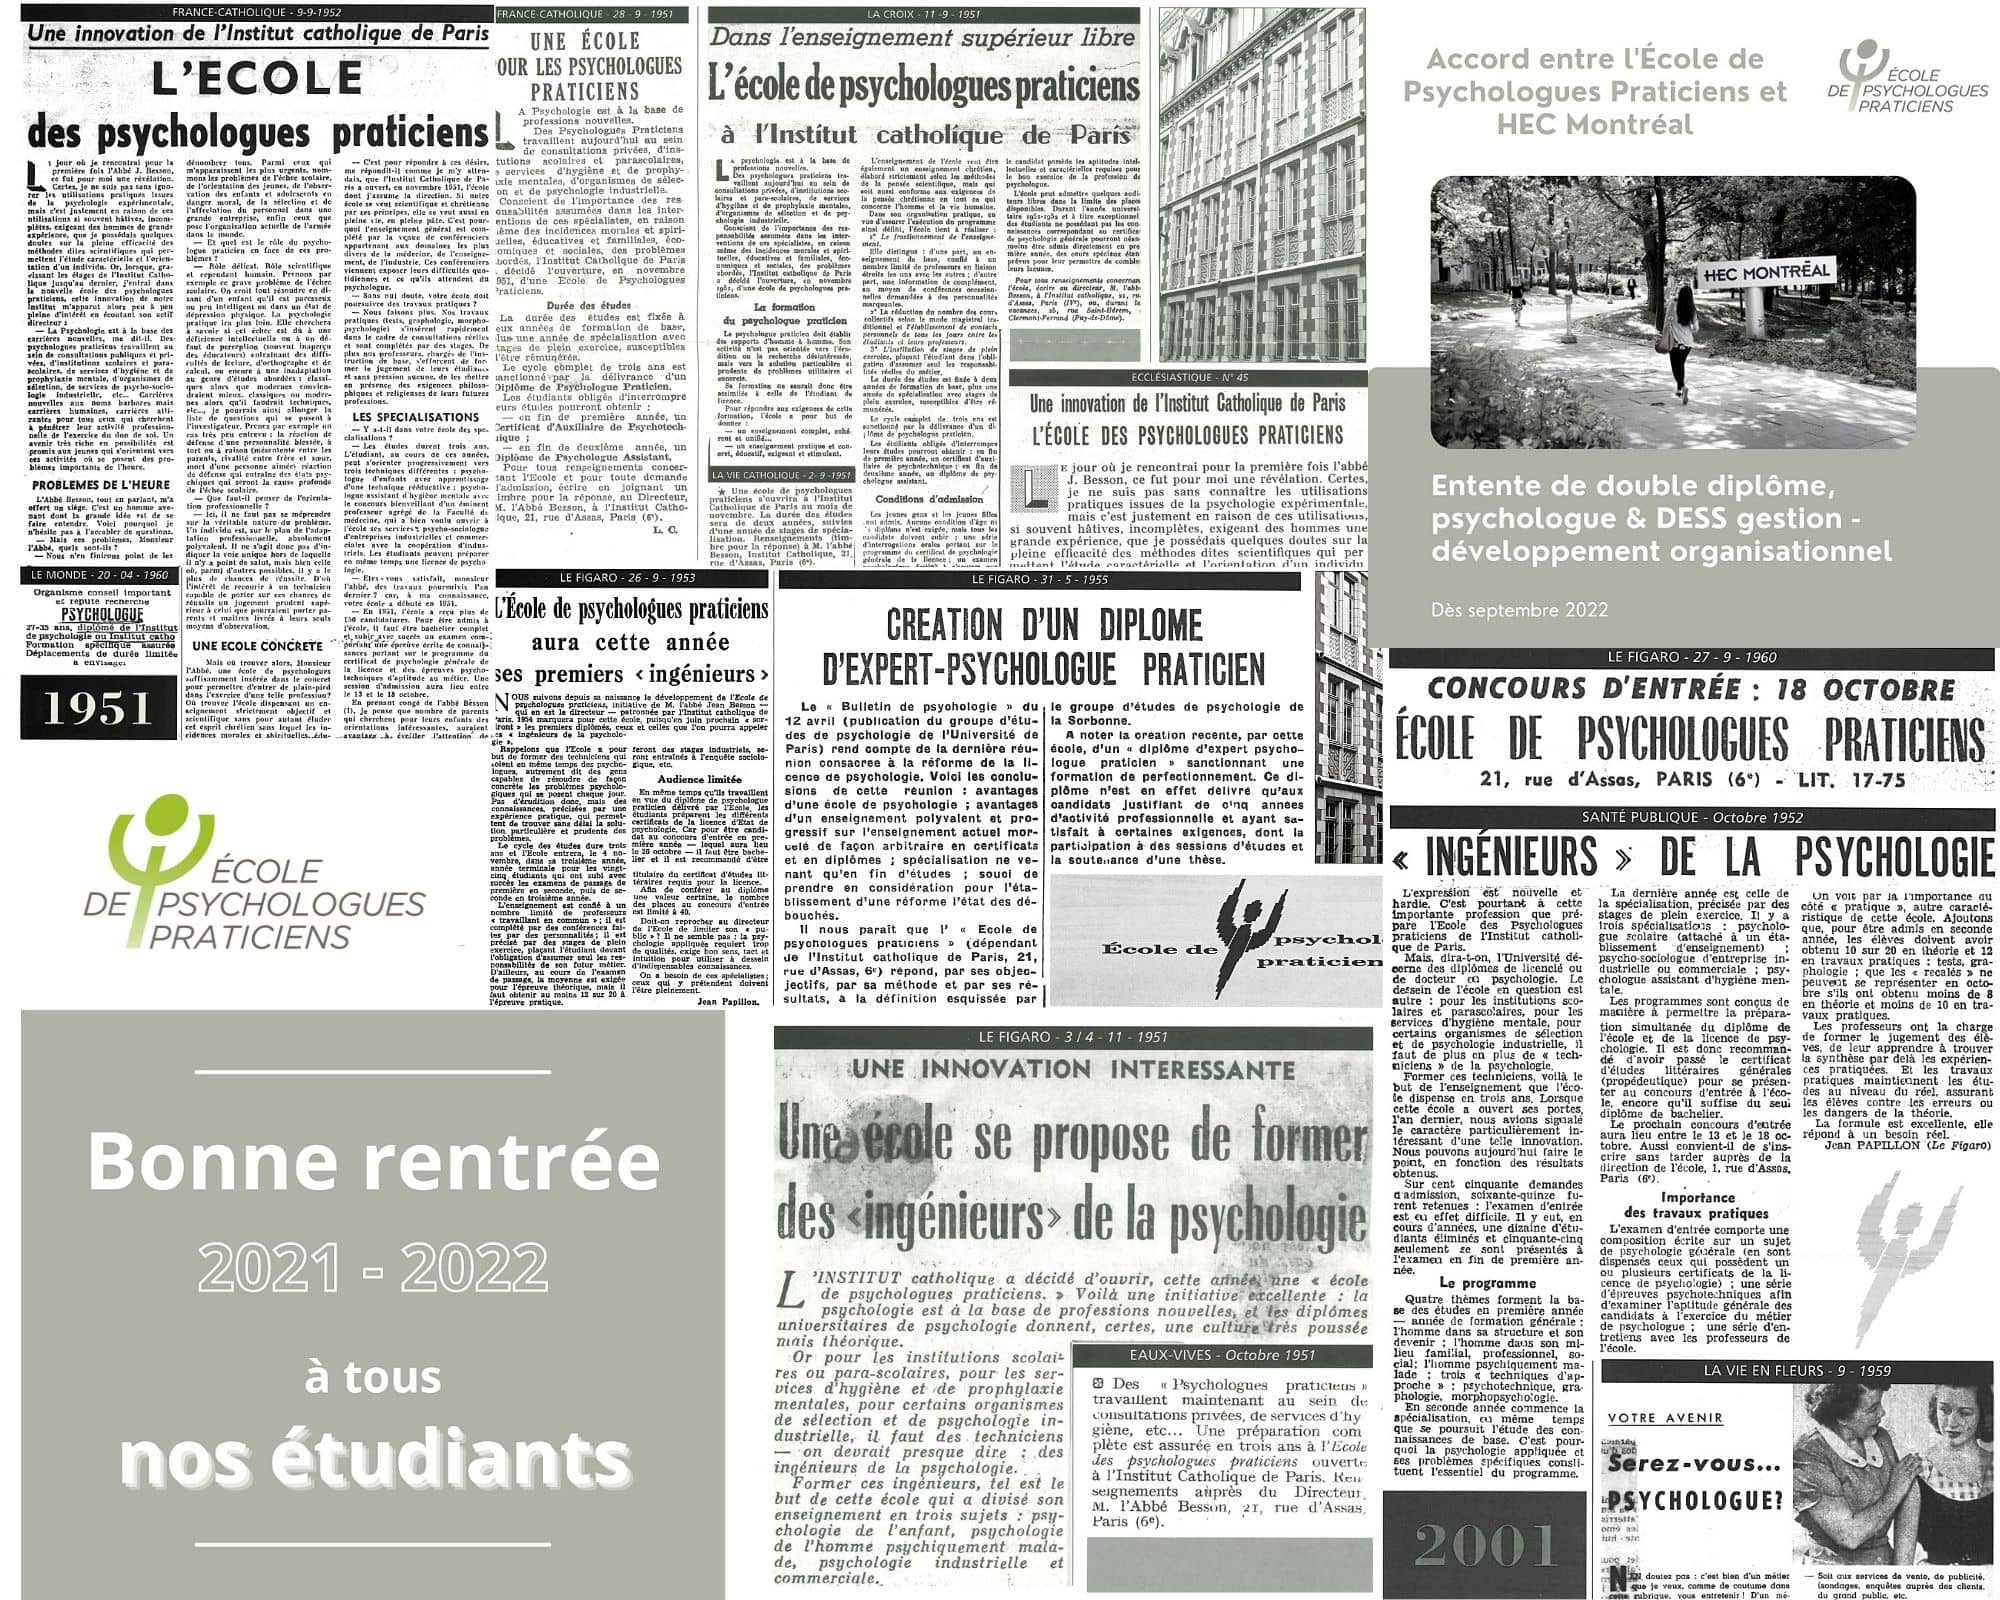 Mosaique retombees presse Ecole de Psychologues Praticiens Paris et Lyon